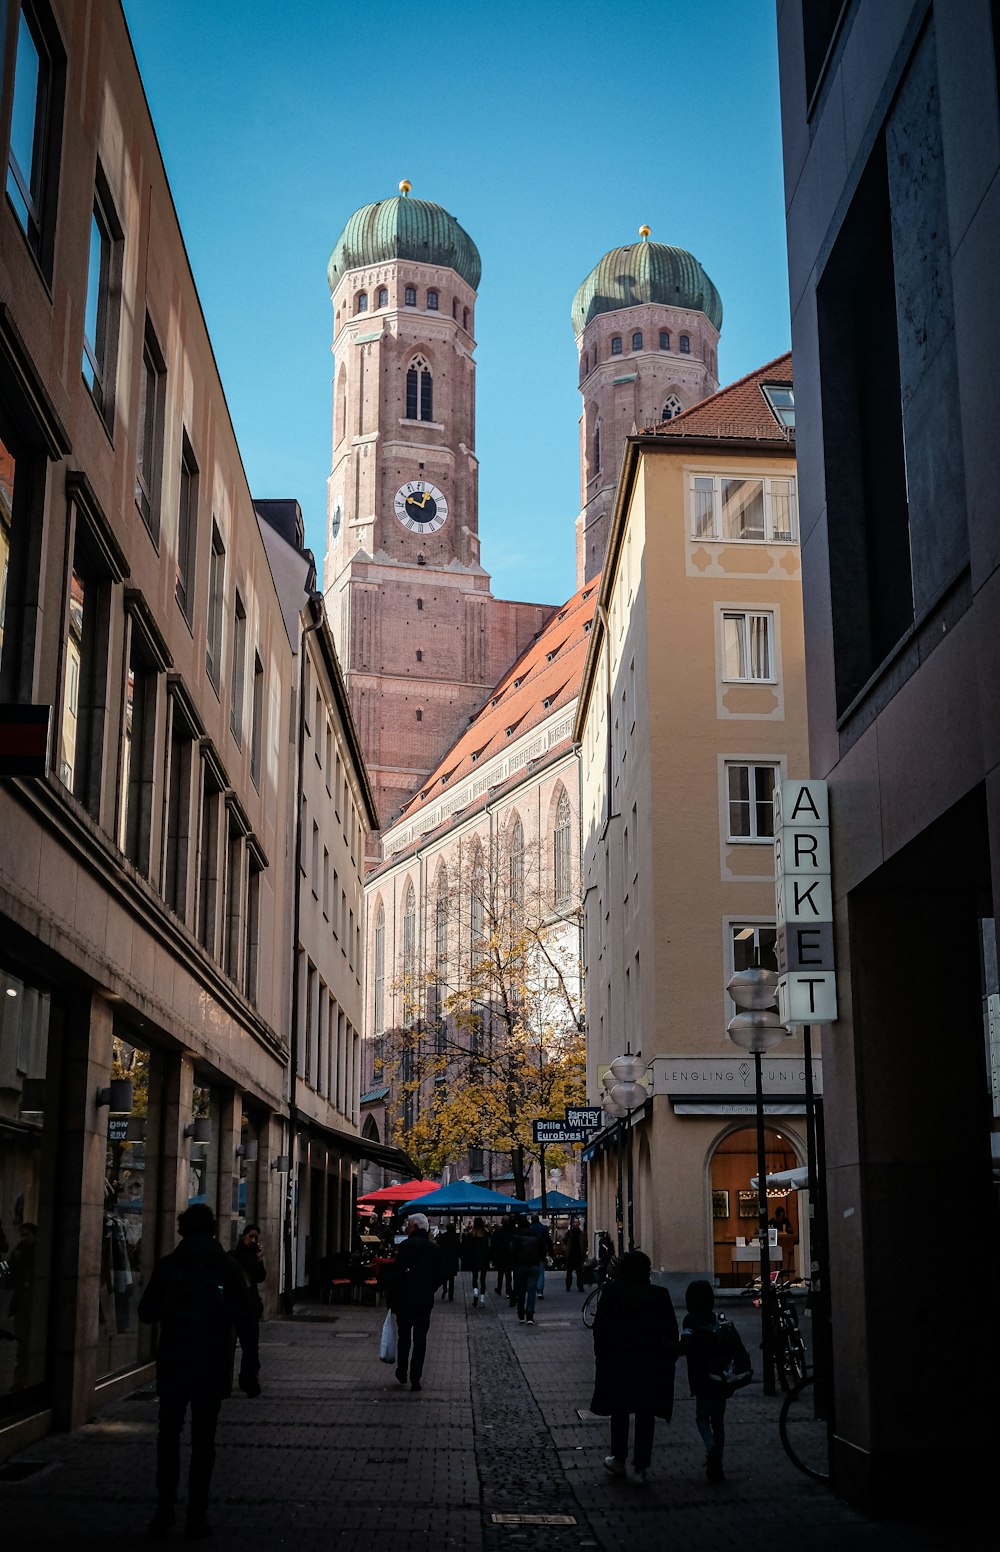 Ein Glockenturm in einer Stadt